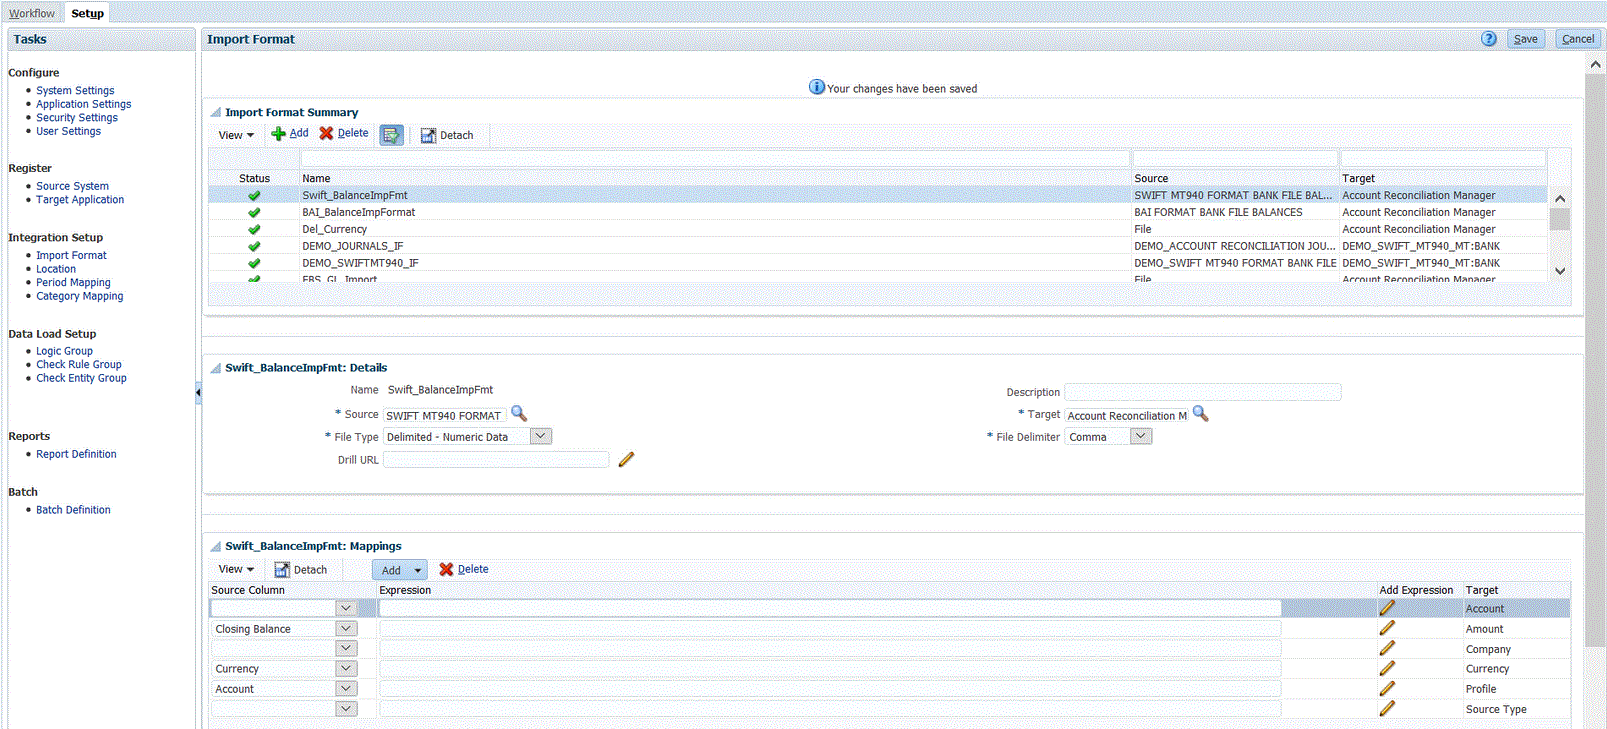 Immagine che illustra il formato di importazione per saldi bancari in formato SWIFT MT940